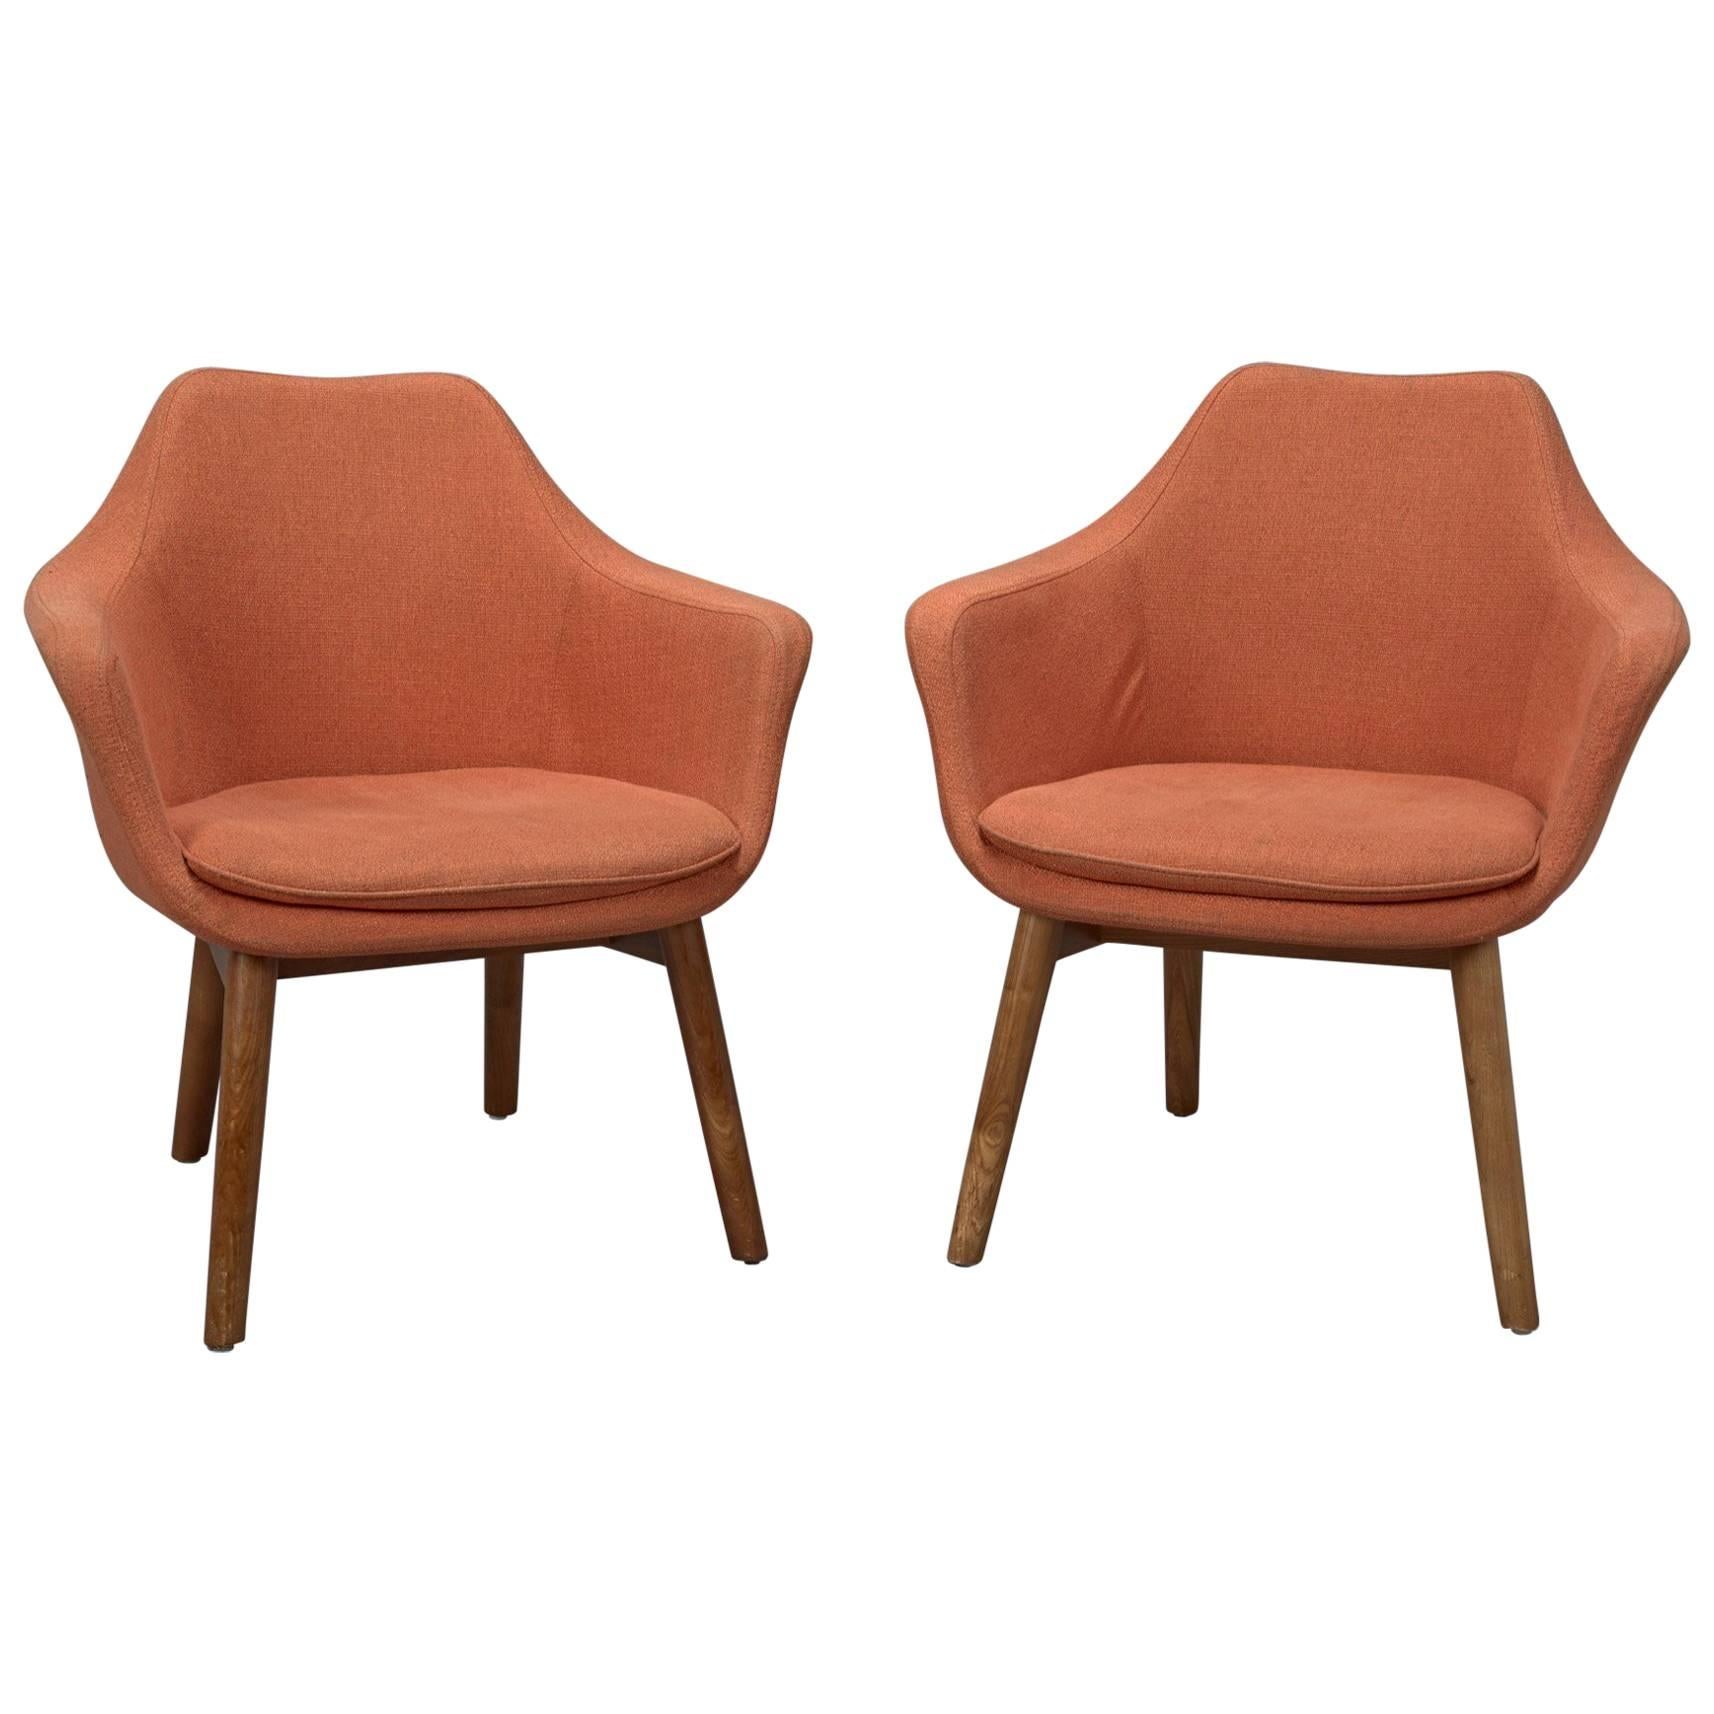 Pair of Orange Fabric Mid-Century Modern Armchairs in Style of Eero Saarinen